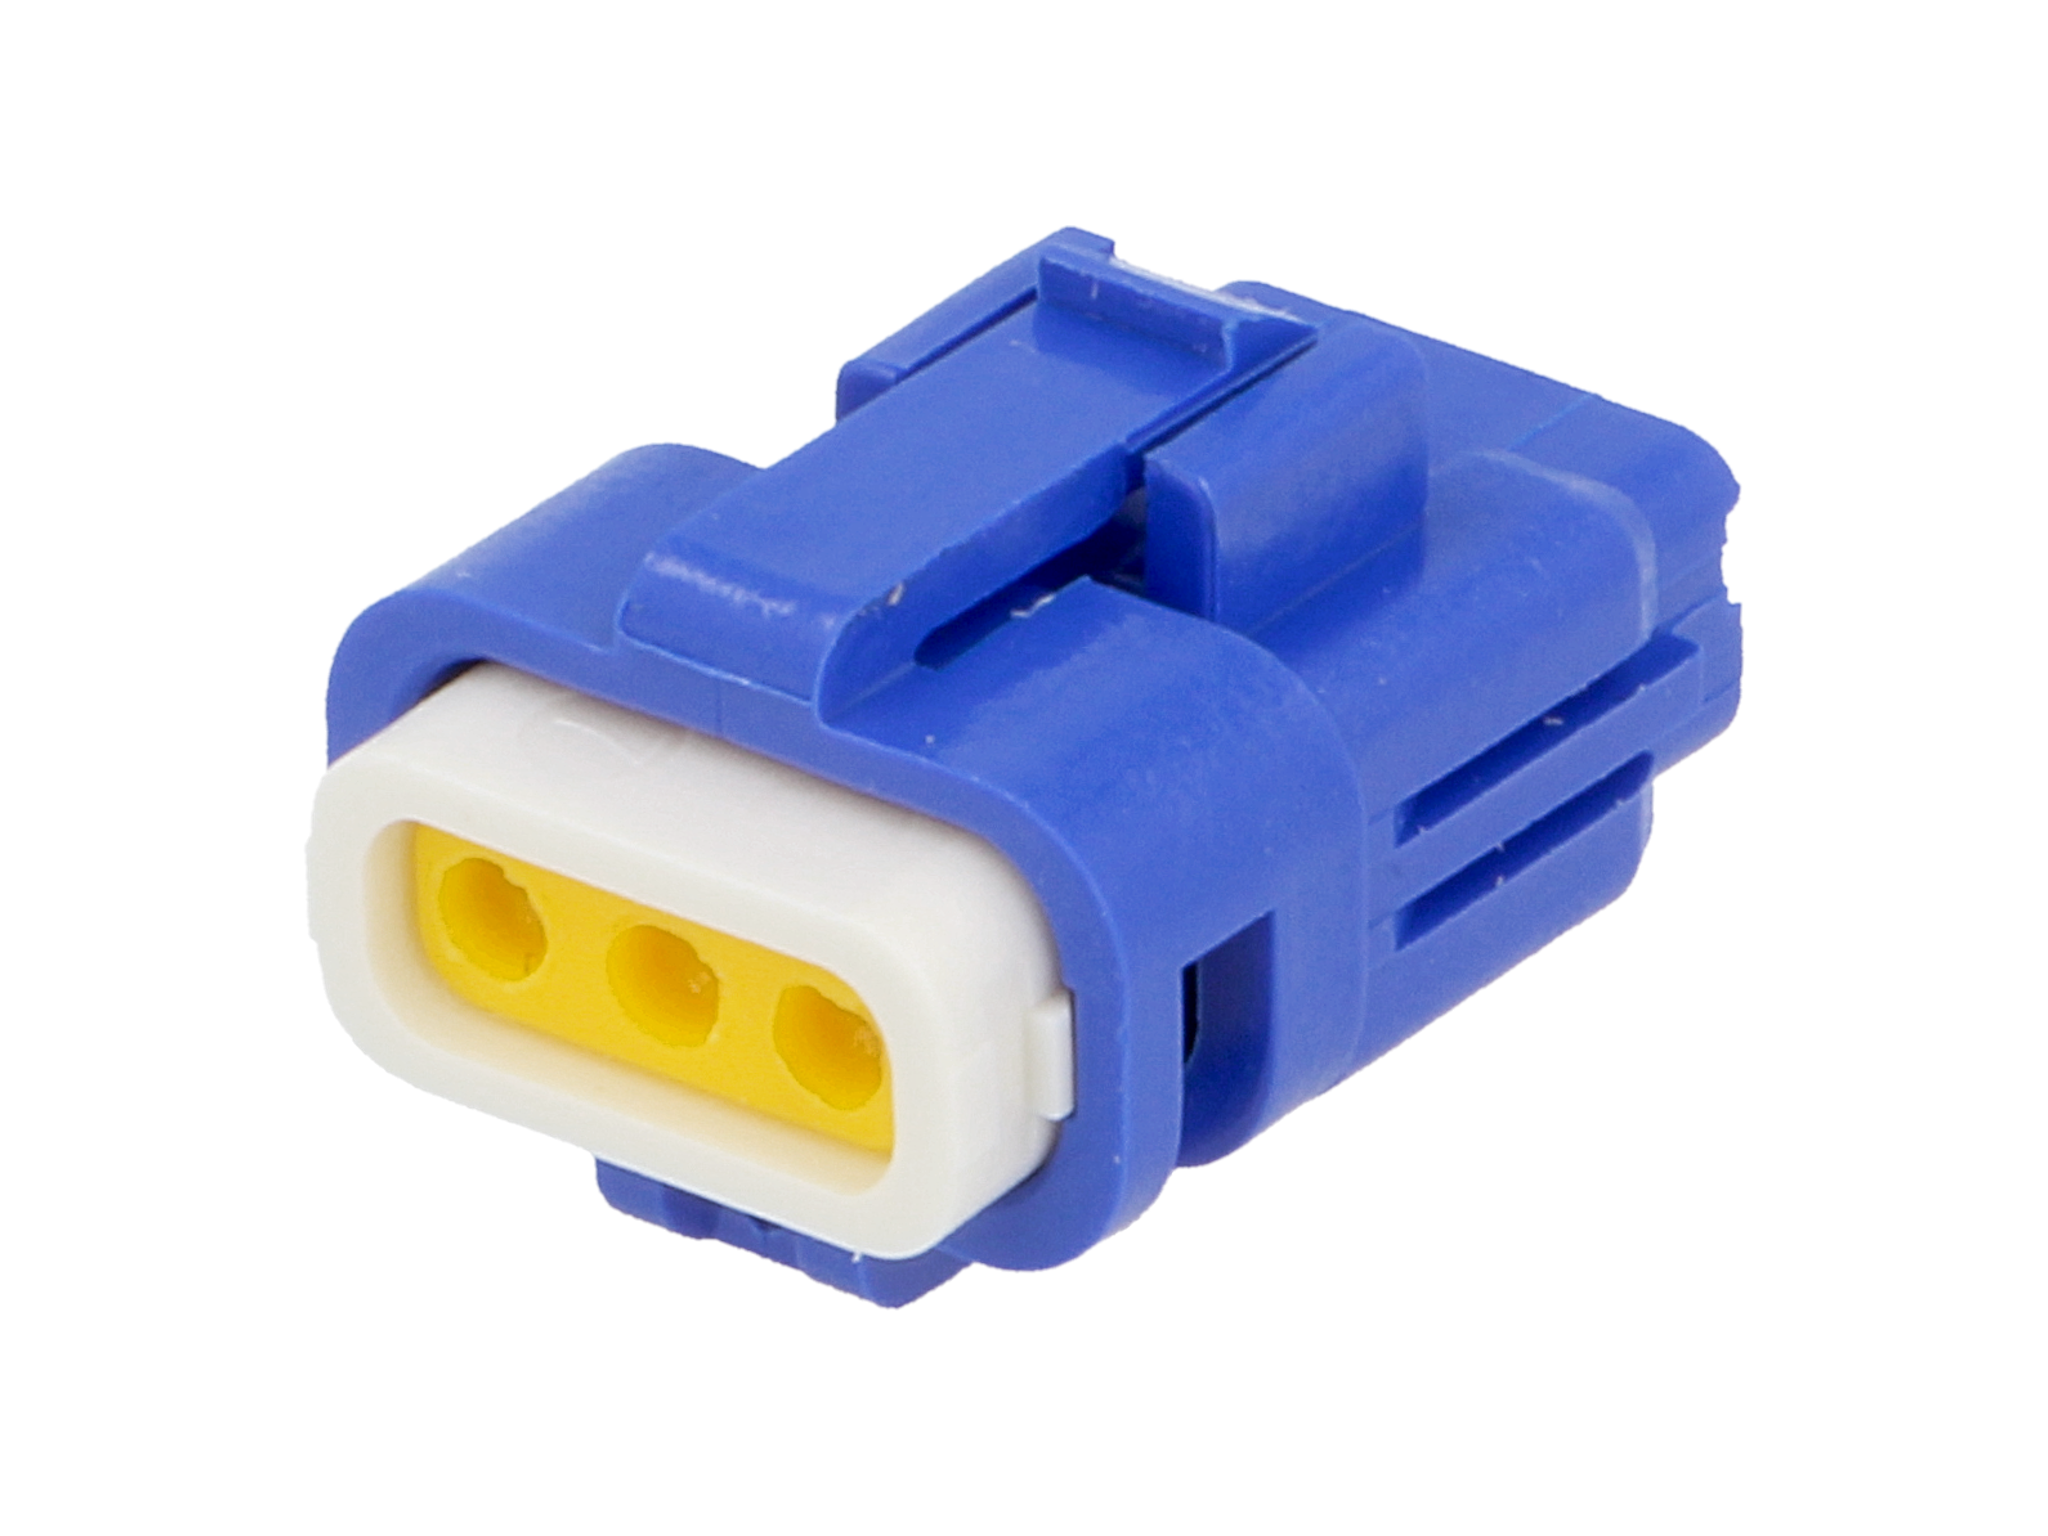 E-Seal Series connector